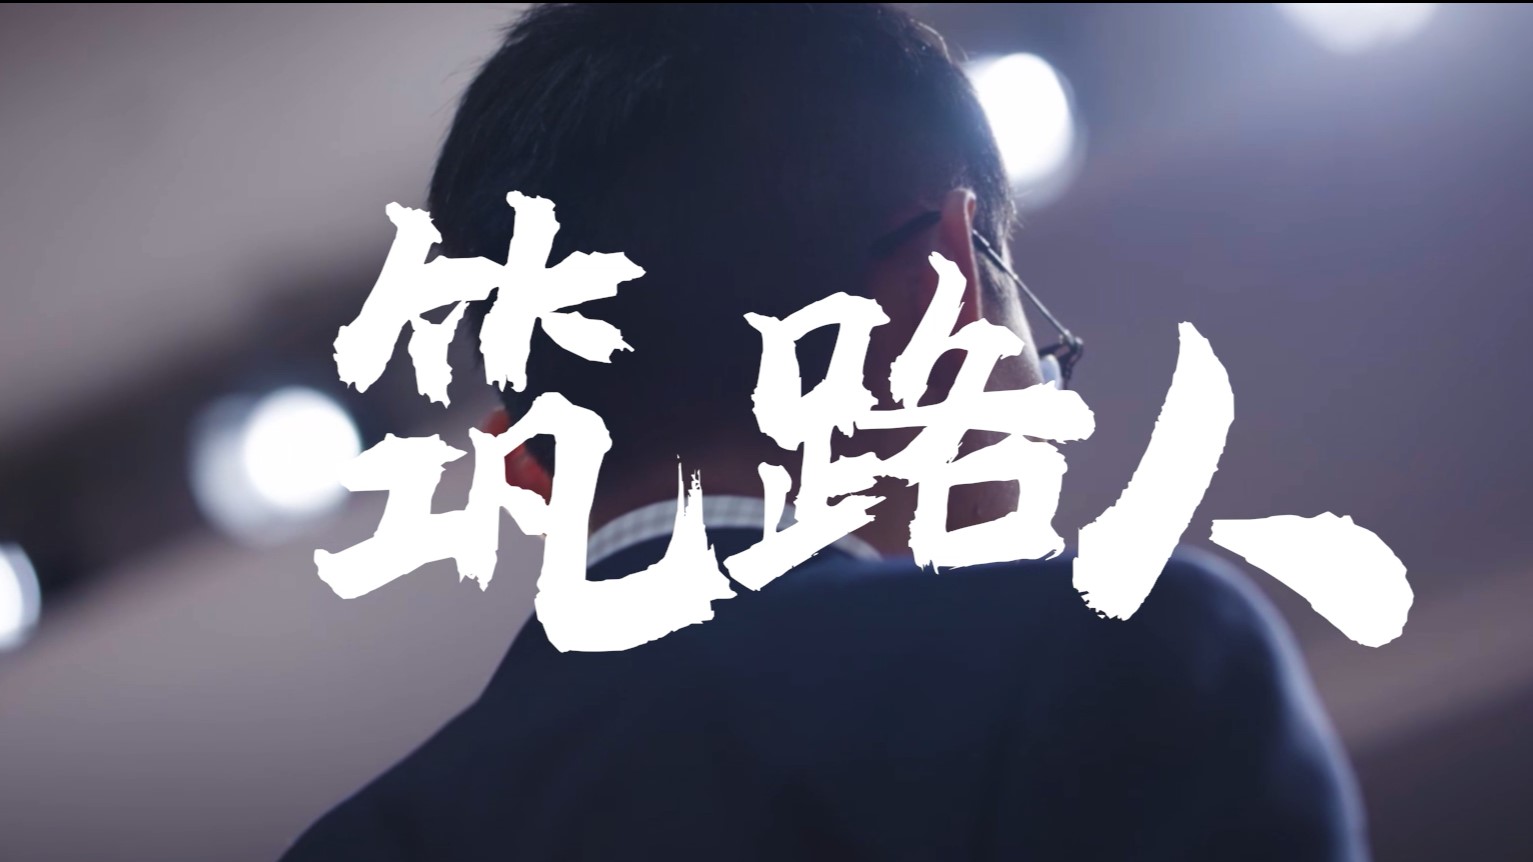 《筑路人》丨贵州省首届社会主义核心价值观主题微电影(微视频)征集展示活动作品